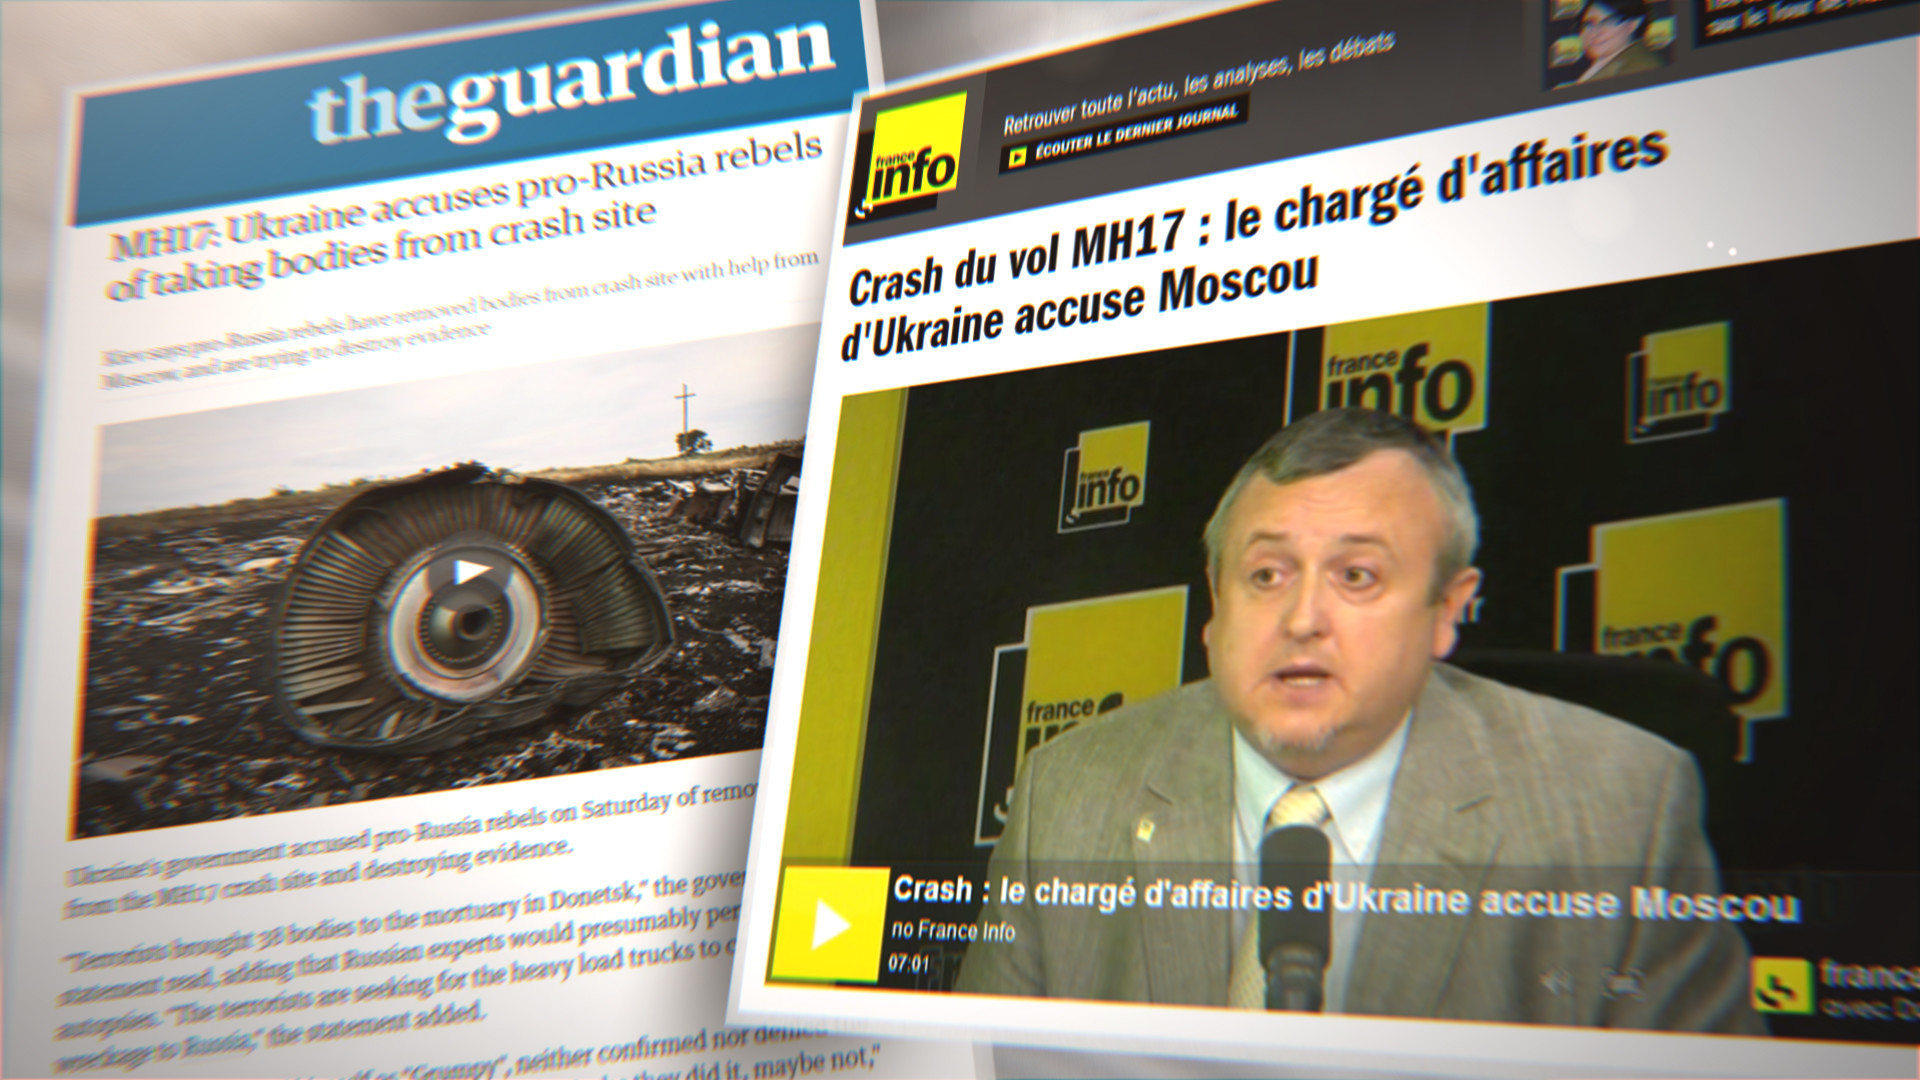 MH17 : ce que l’on sait avant la publication du rapport du Bureau néerlandais pour la sécurité